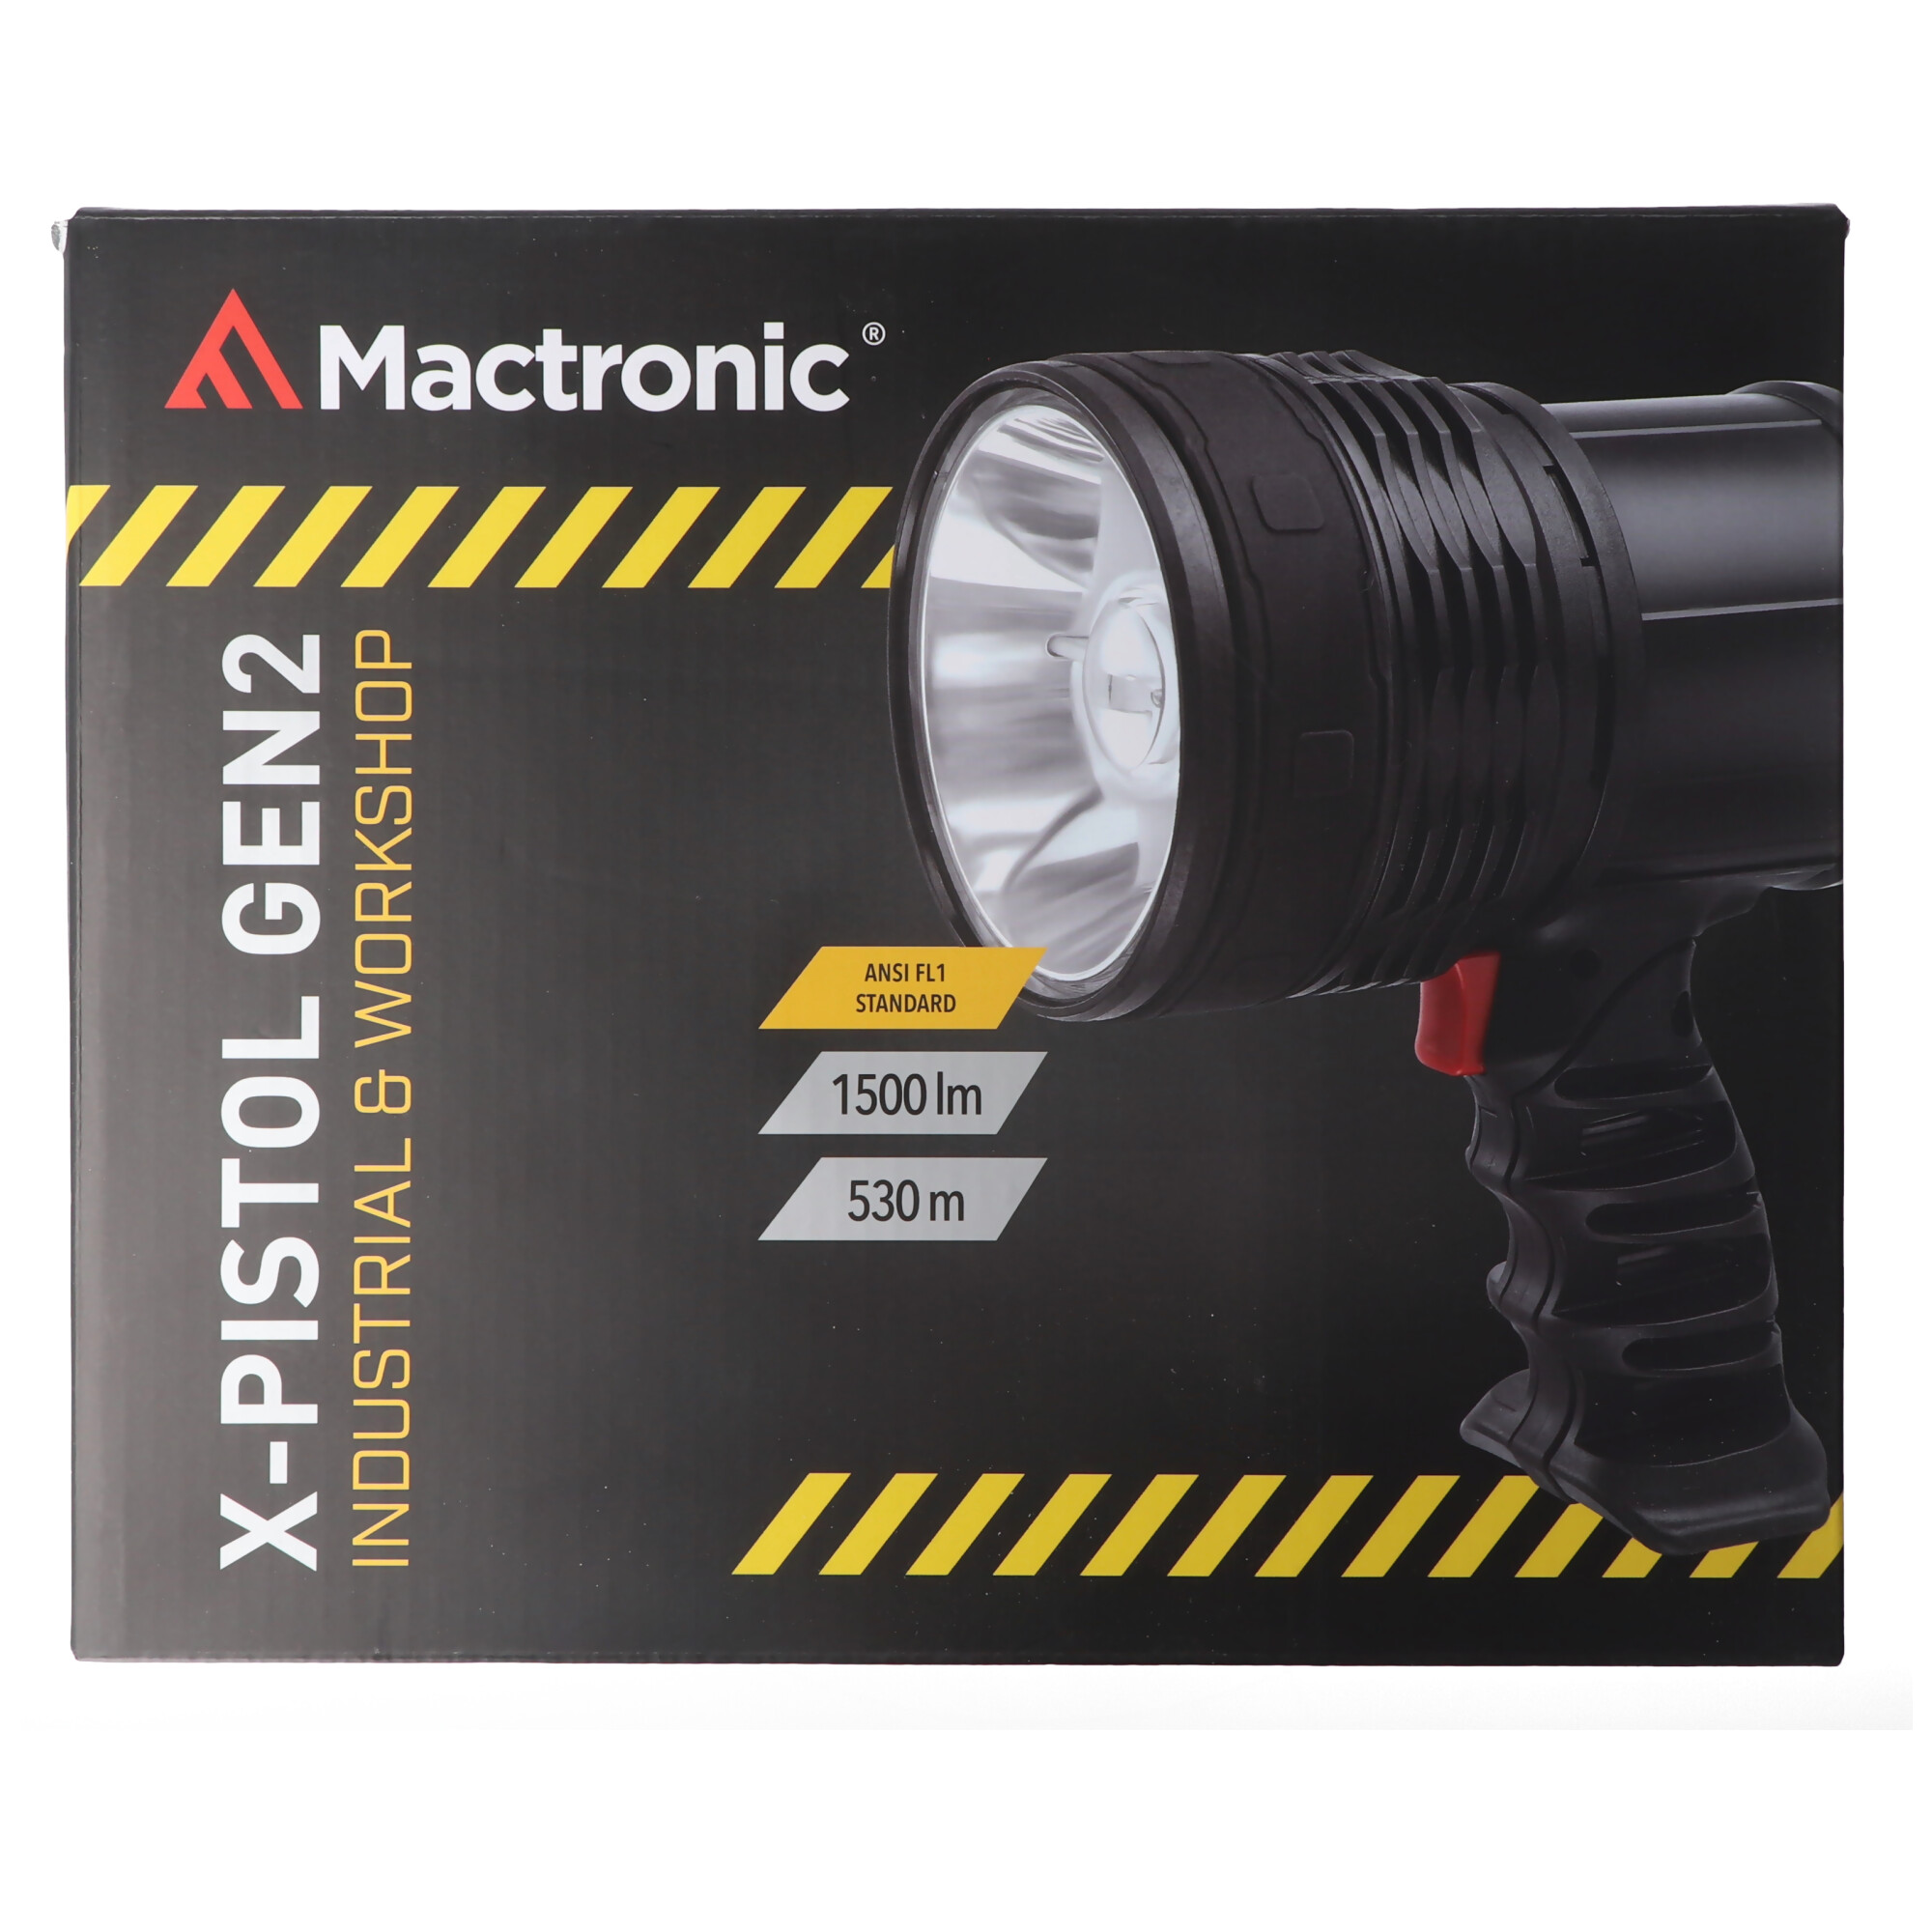 LED Handstrahler, der Suchstrahler mit , 1500 Lumen, mit Fokus, max. 530 Meter, Wasserdicht IPX6